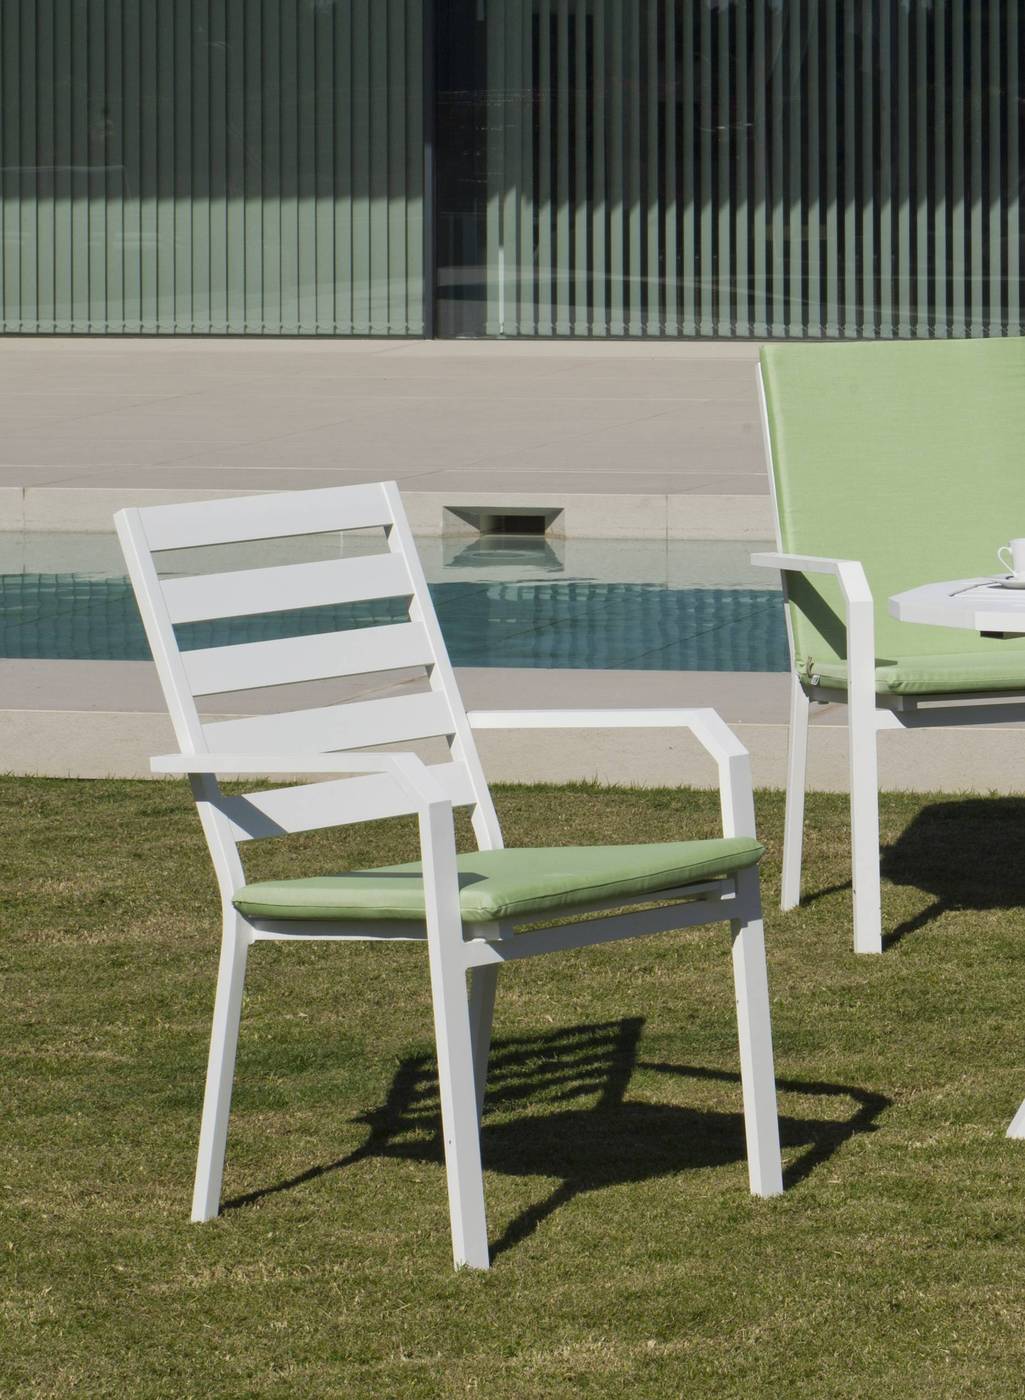 Set Aluminio Brasilia-Caravel 150-6 - Moderno conjunto de aluminio luxe: Mesa de comedor hexagonal de 150 cm. + 6 sillones. Disponible en color blanco, antracita, champagne, plata o marrón.